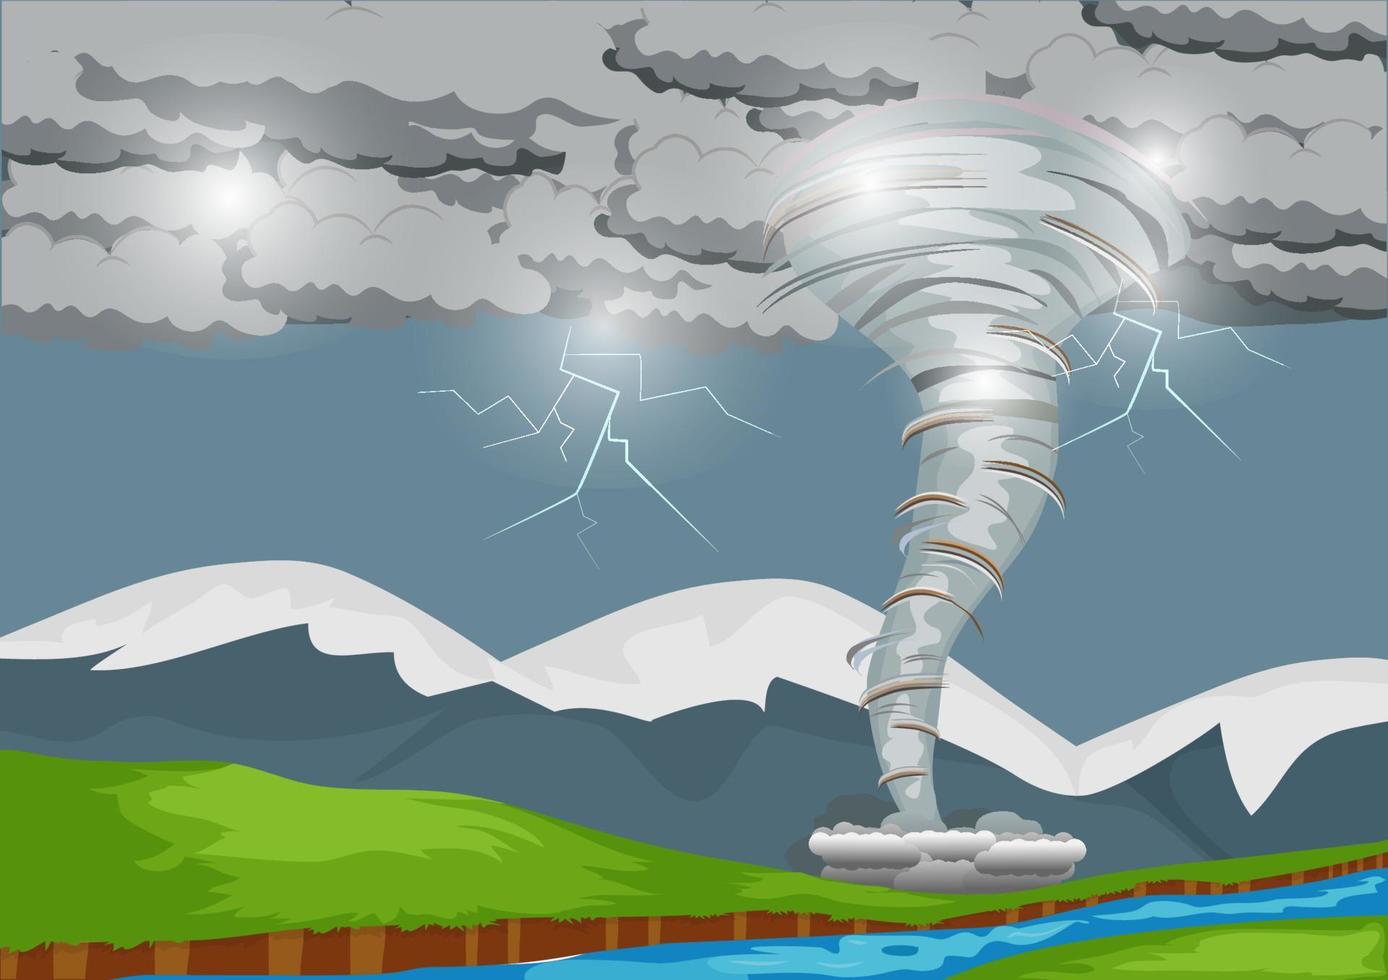 een sterke storm veroorzaakt een krachtige tornado die met bliksemplaten door het landschap raast. gemengde media landschapsillustratie vector